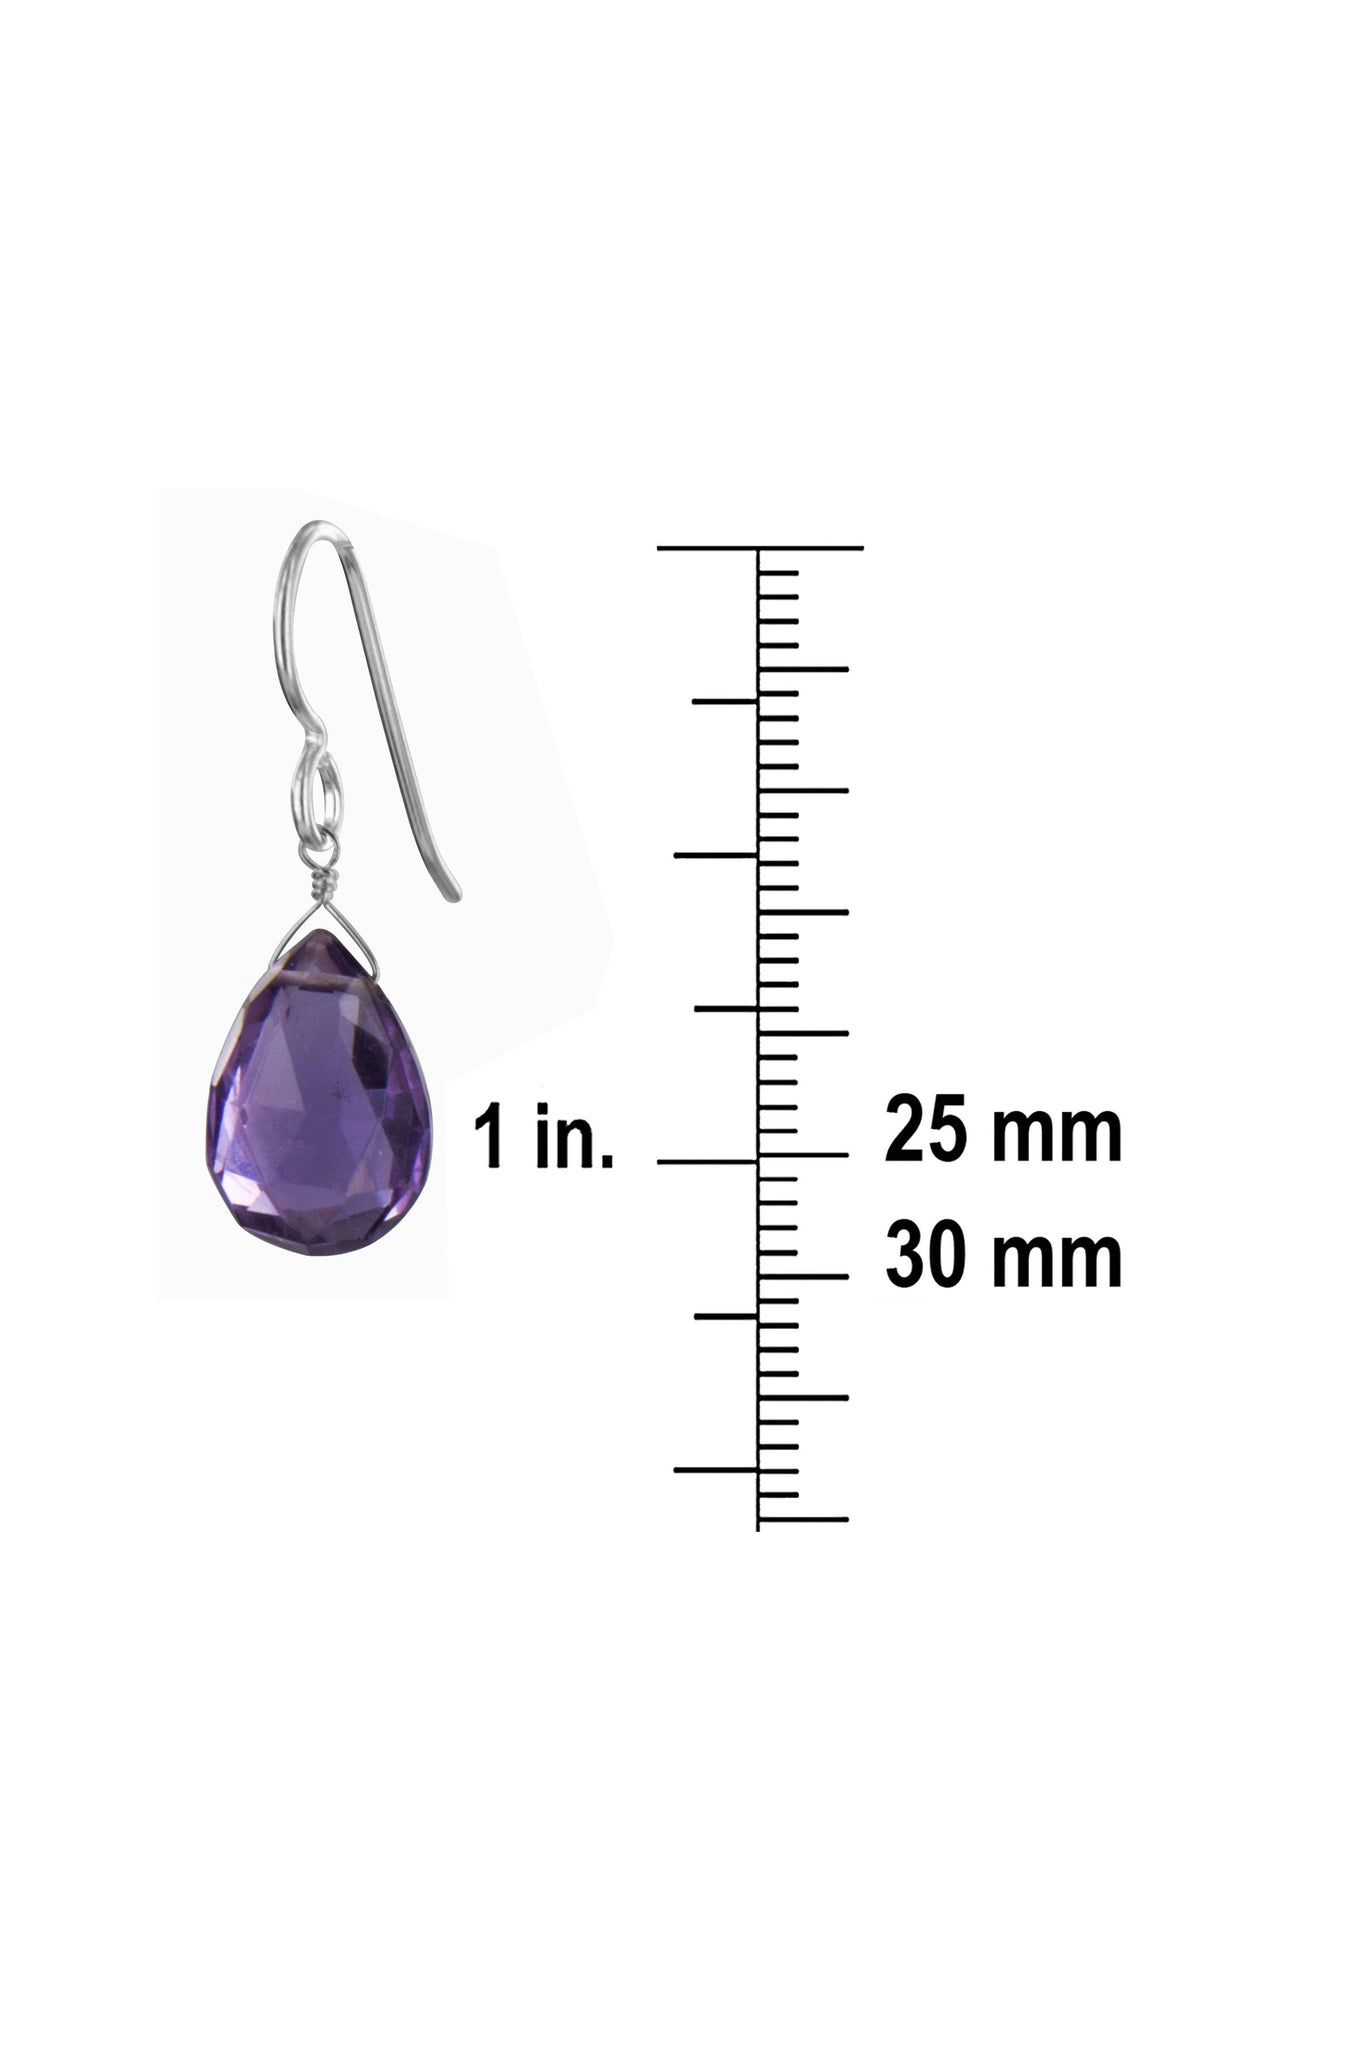 Amethyst Purple Gemstone Dangle Silver Earrings